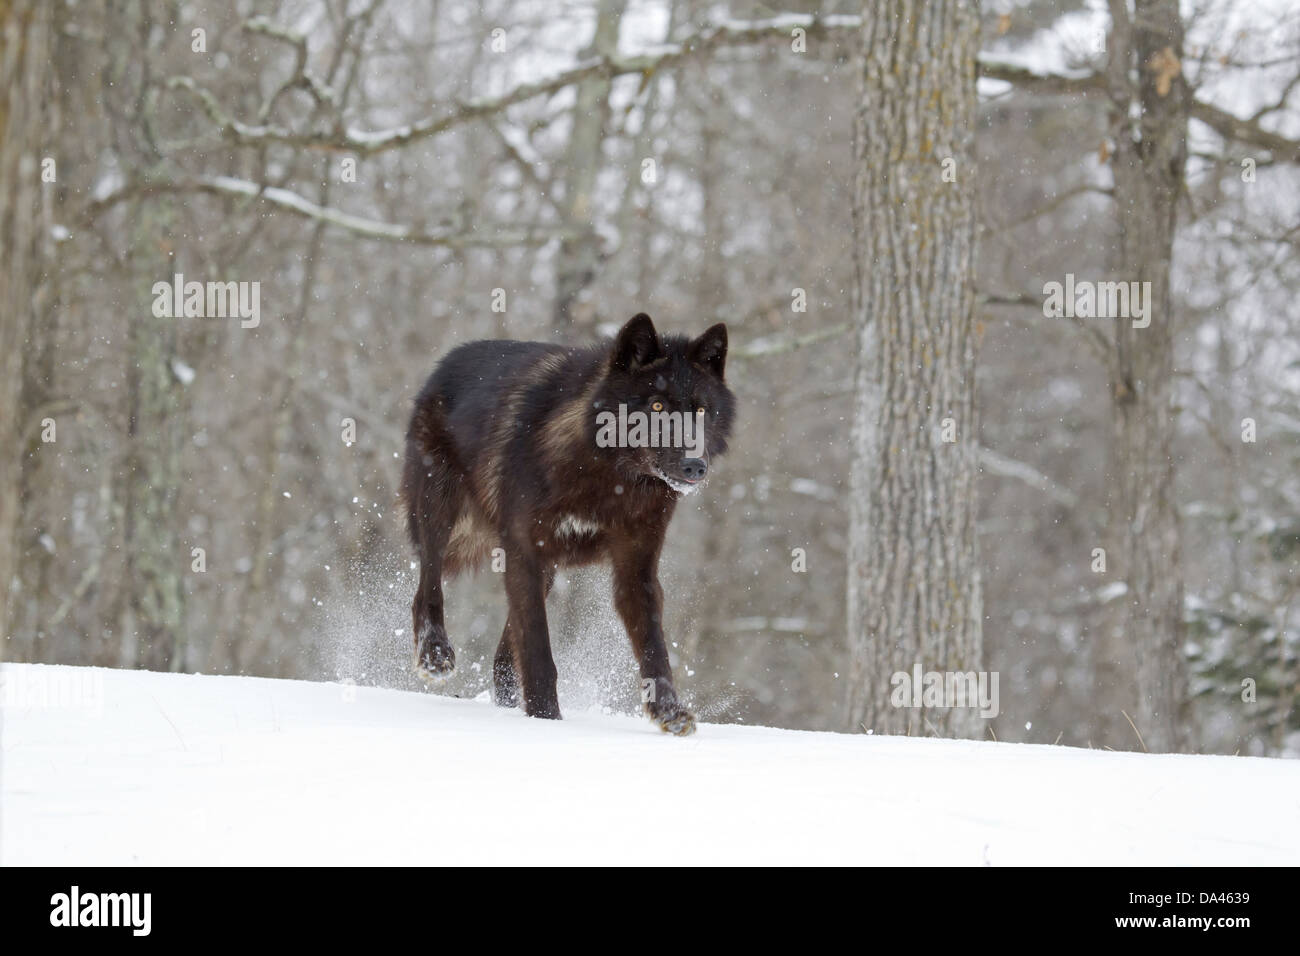 Lupo (Canis lupus) nero forma, femmina adulta, passeggiate sulla neve a bordo del bosco, Minnesota, U.S.A., Gennaio (prigioniero) Foto Stock